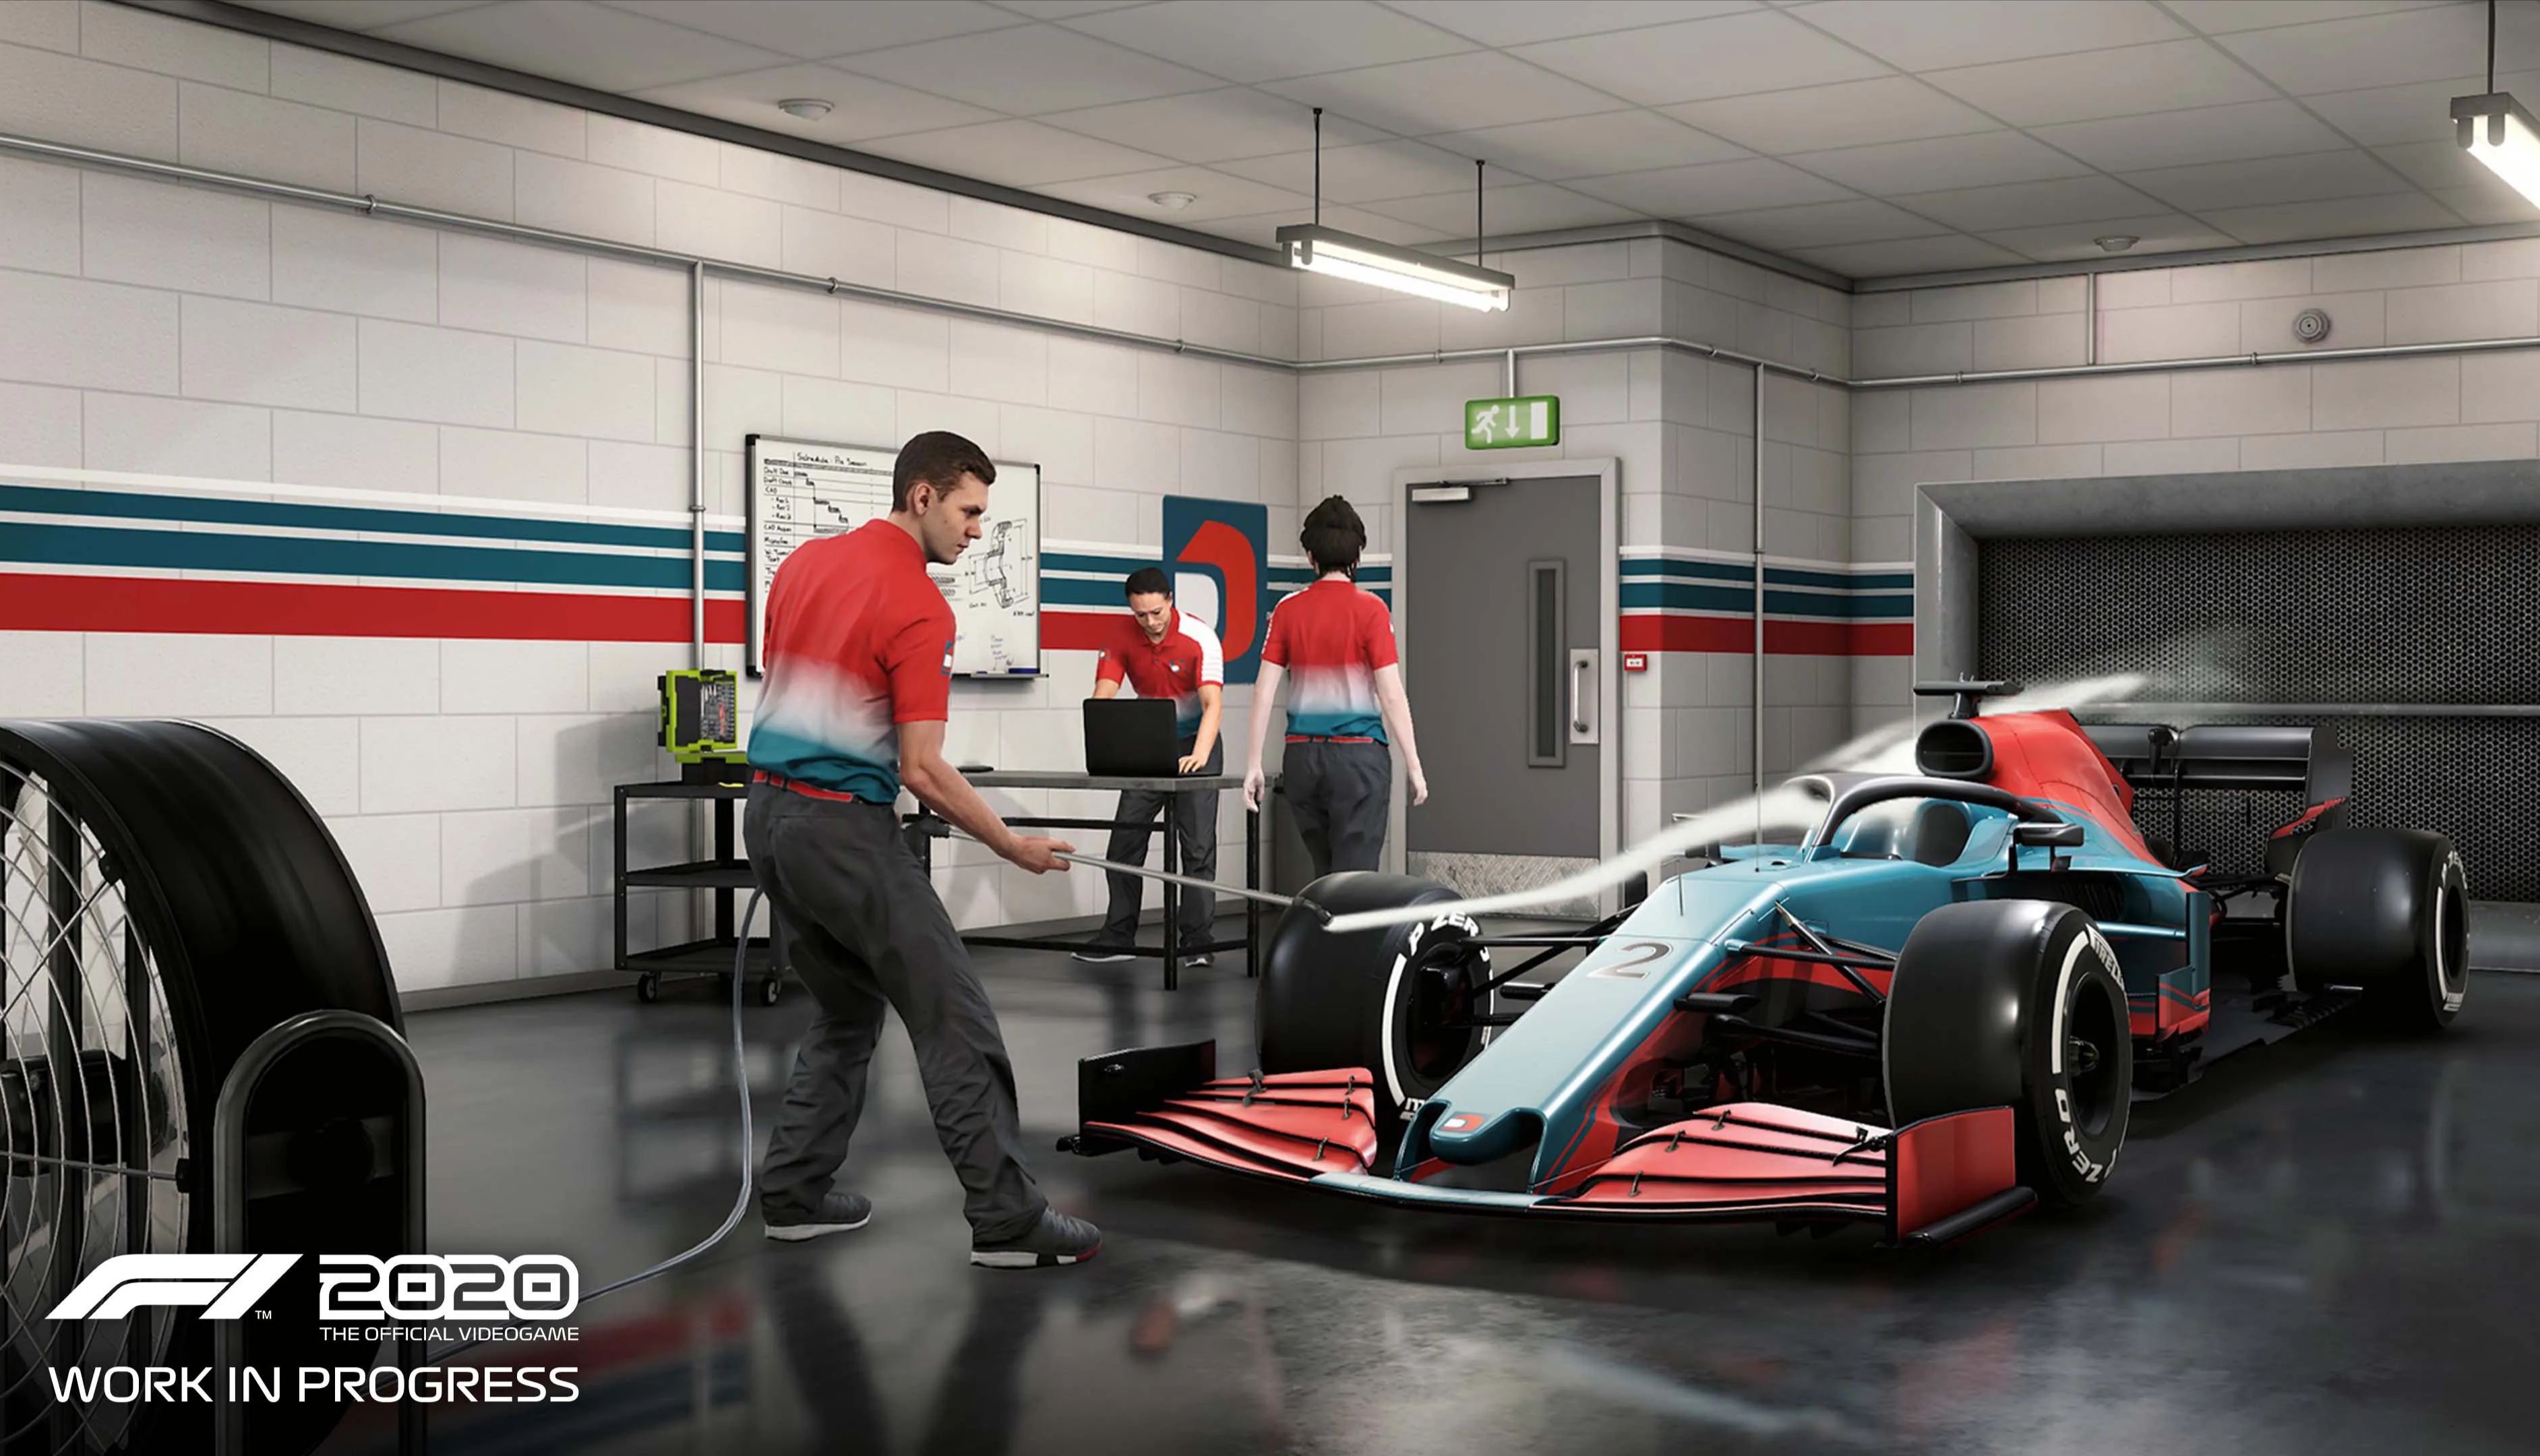 Nový trailer představuje režim My Team ve hře F1 2020